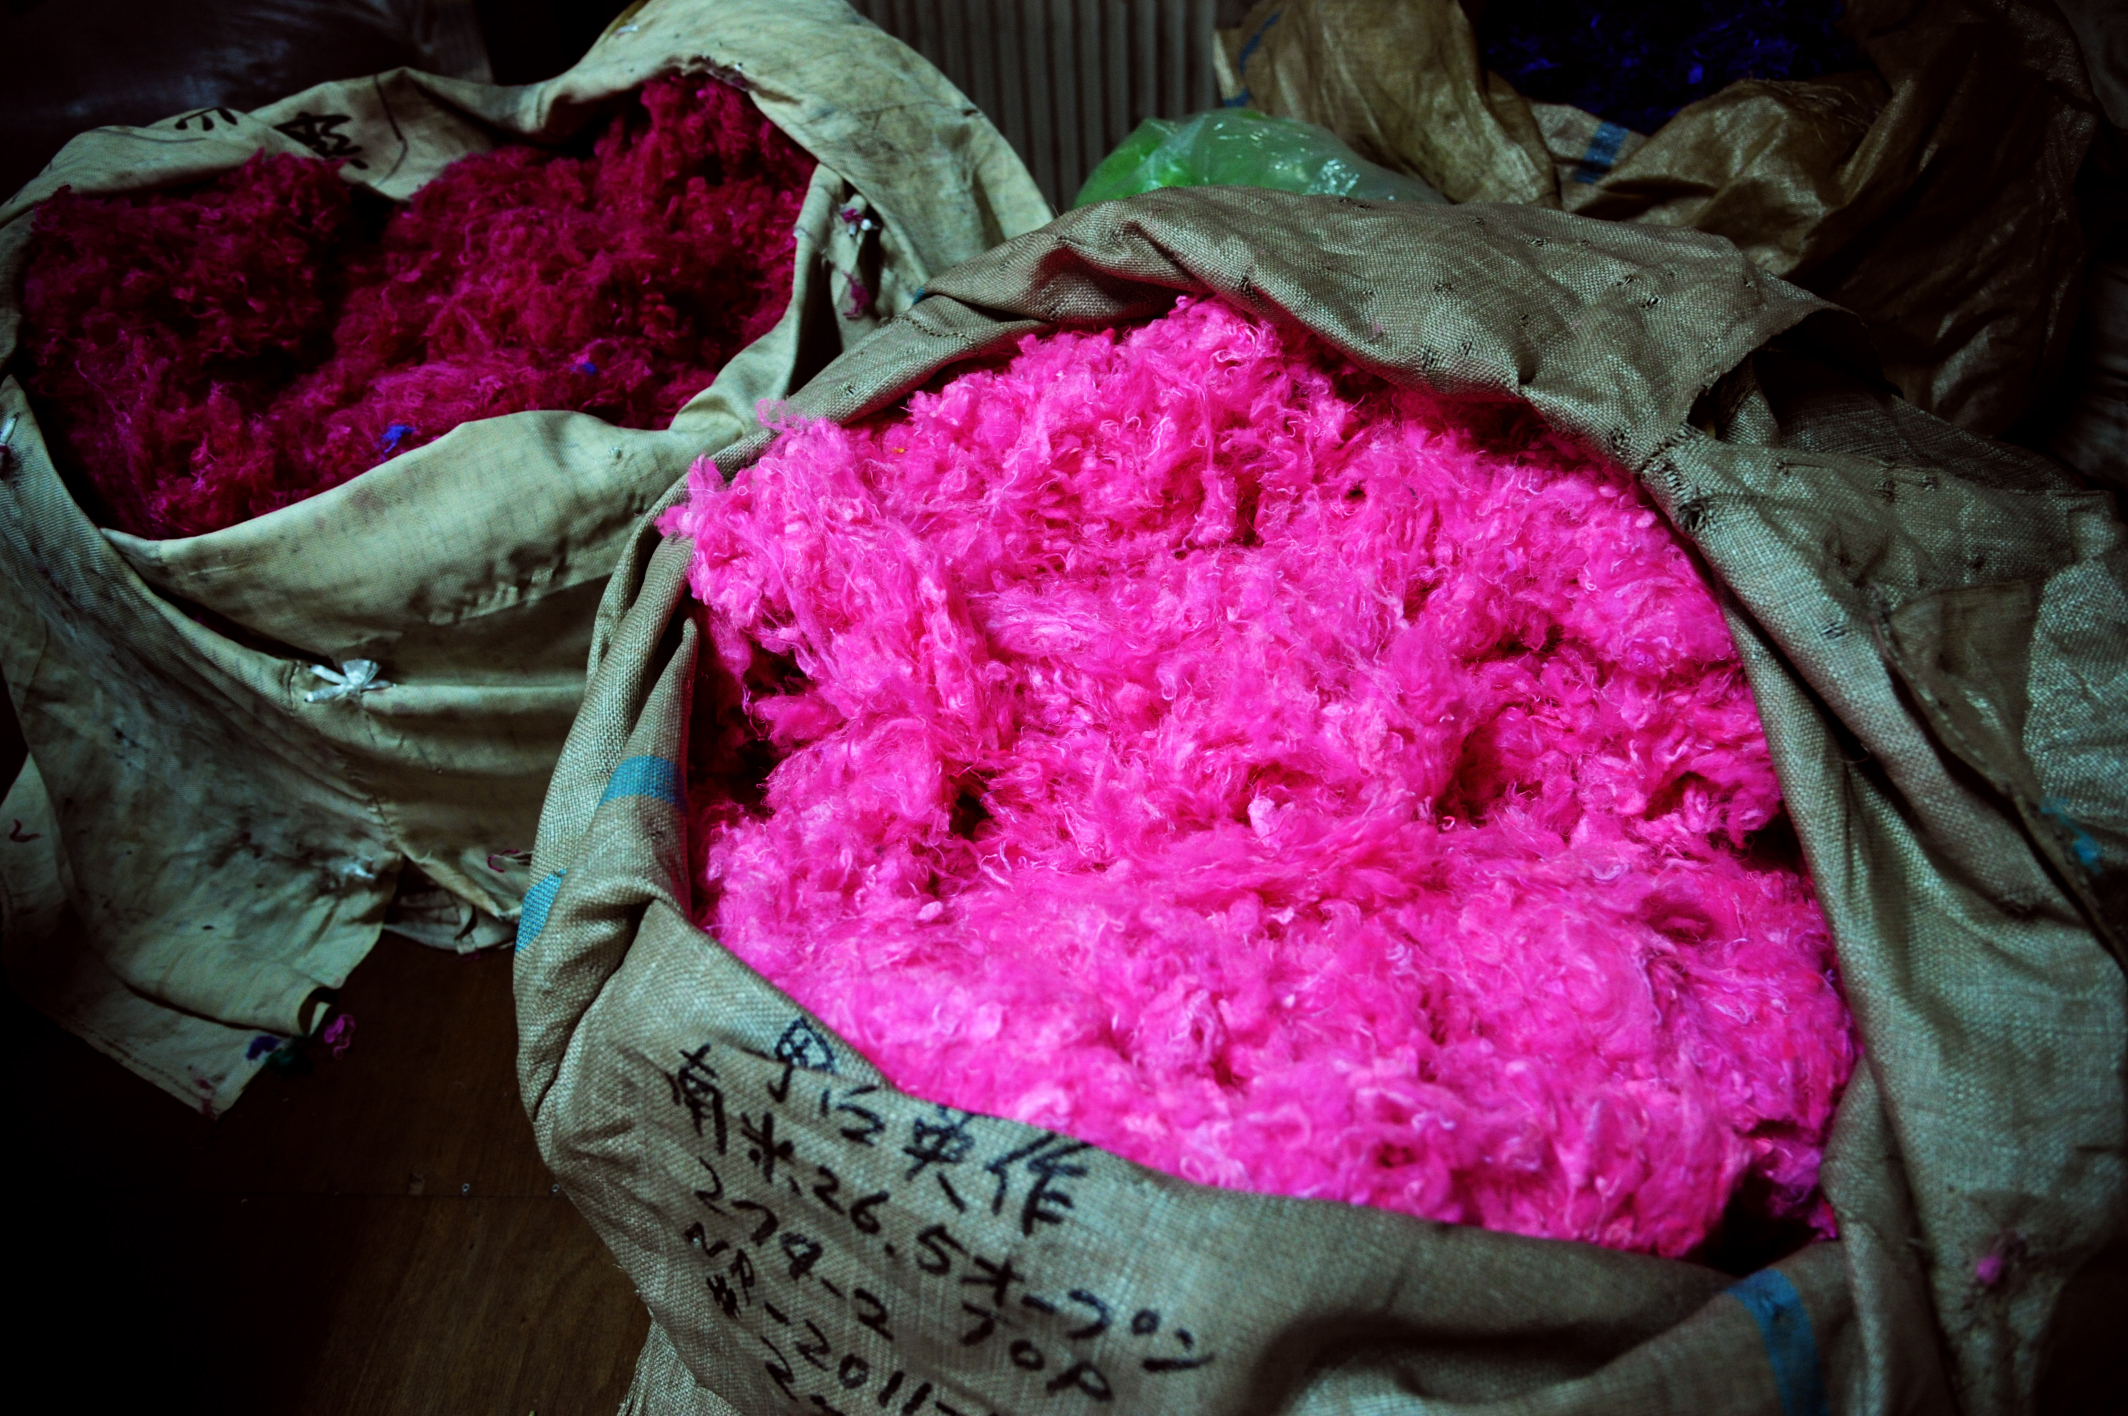 3--Carding - dyed raw materials of silk garden